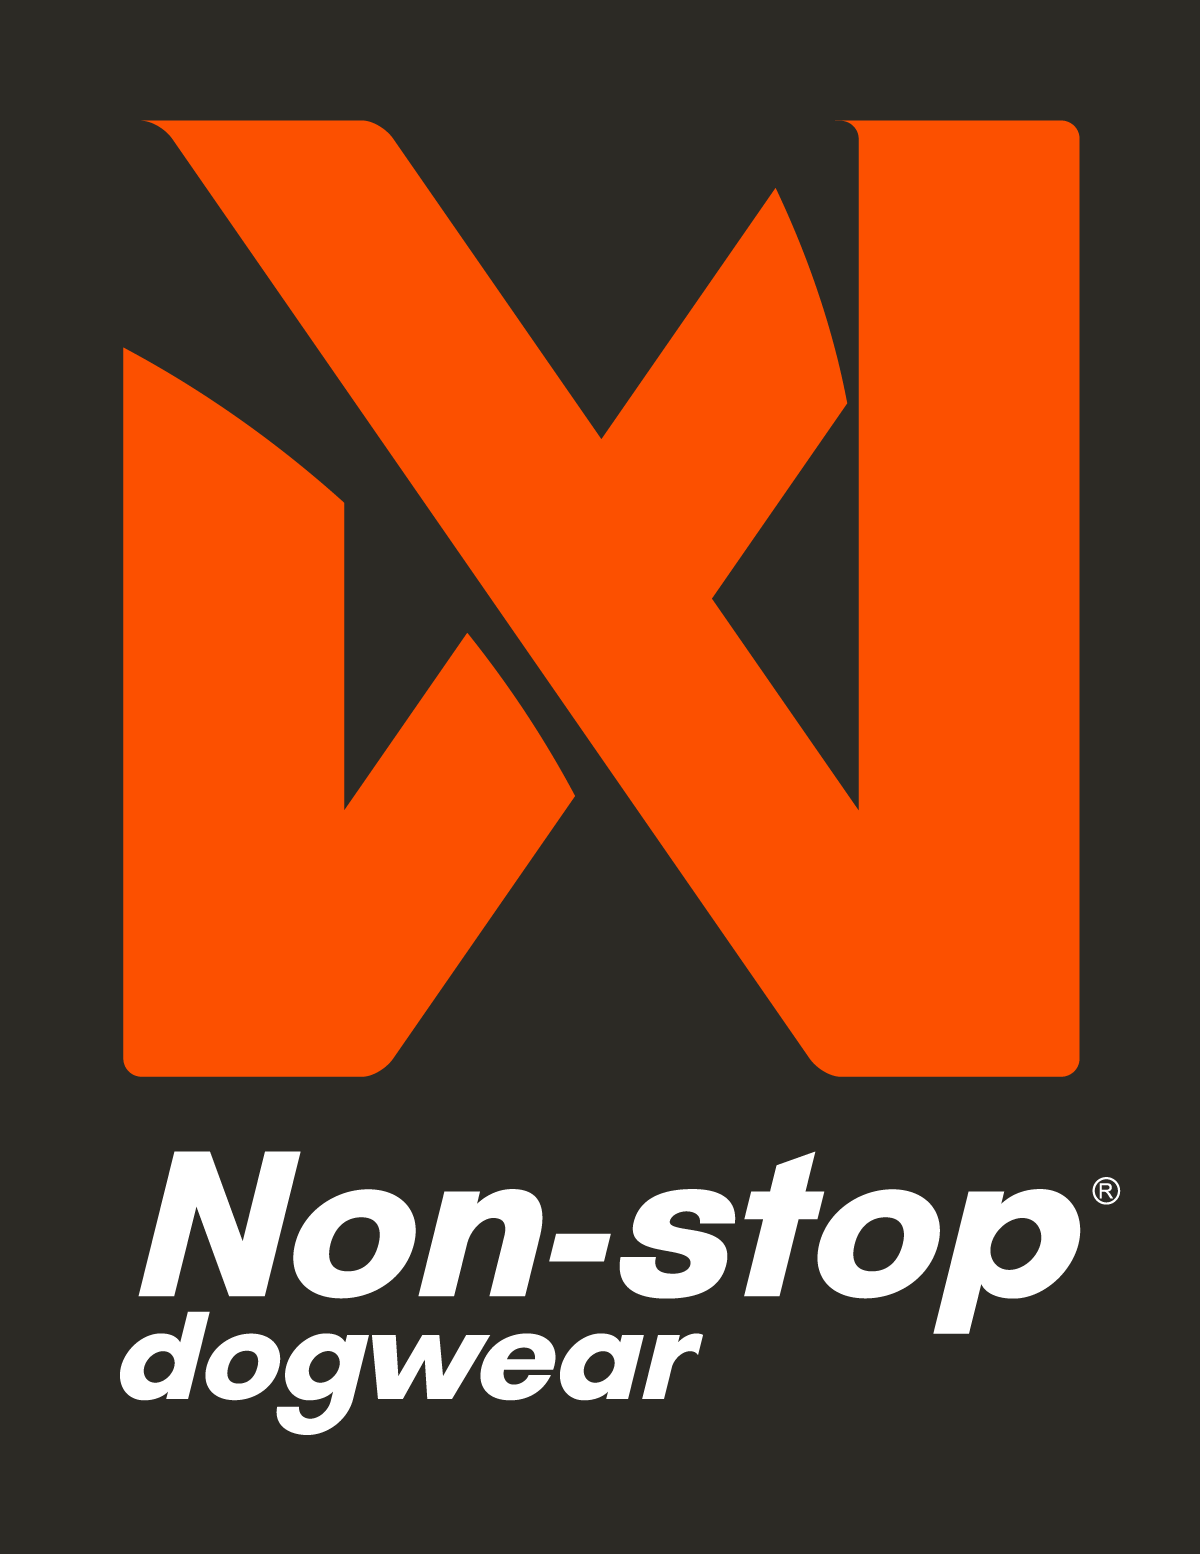 Nonstopdogwear